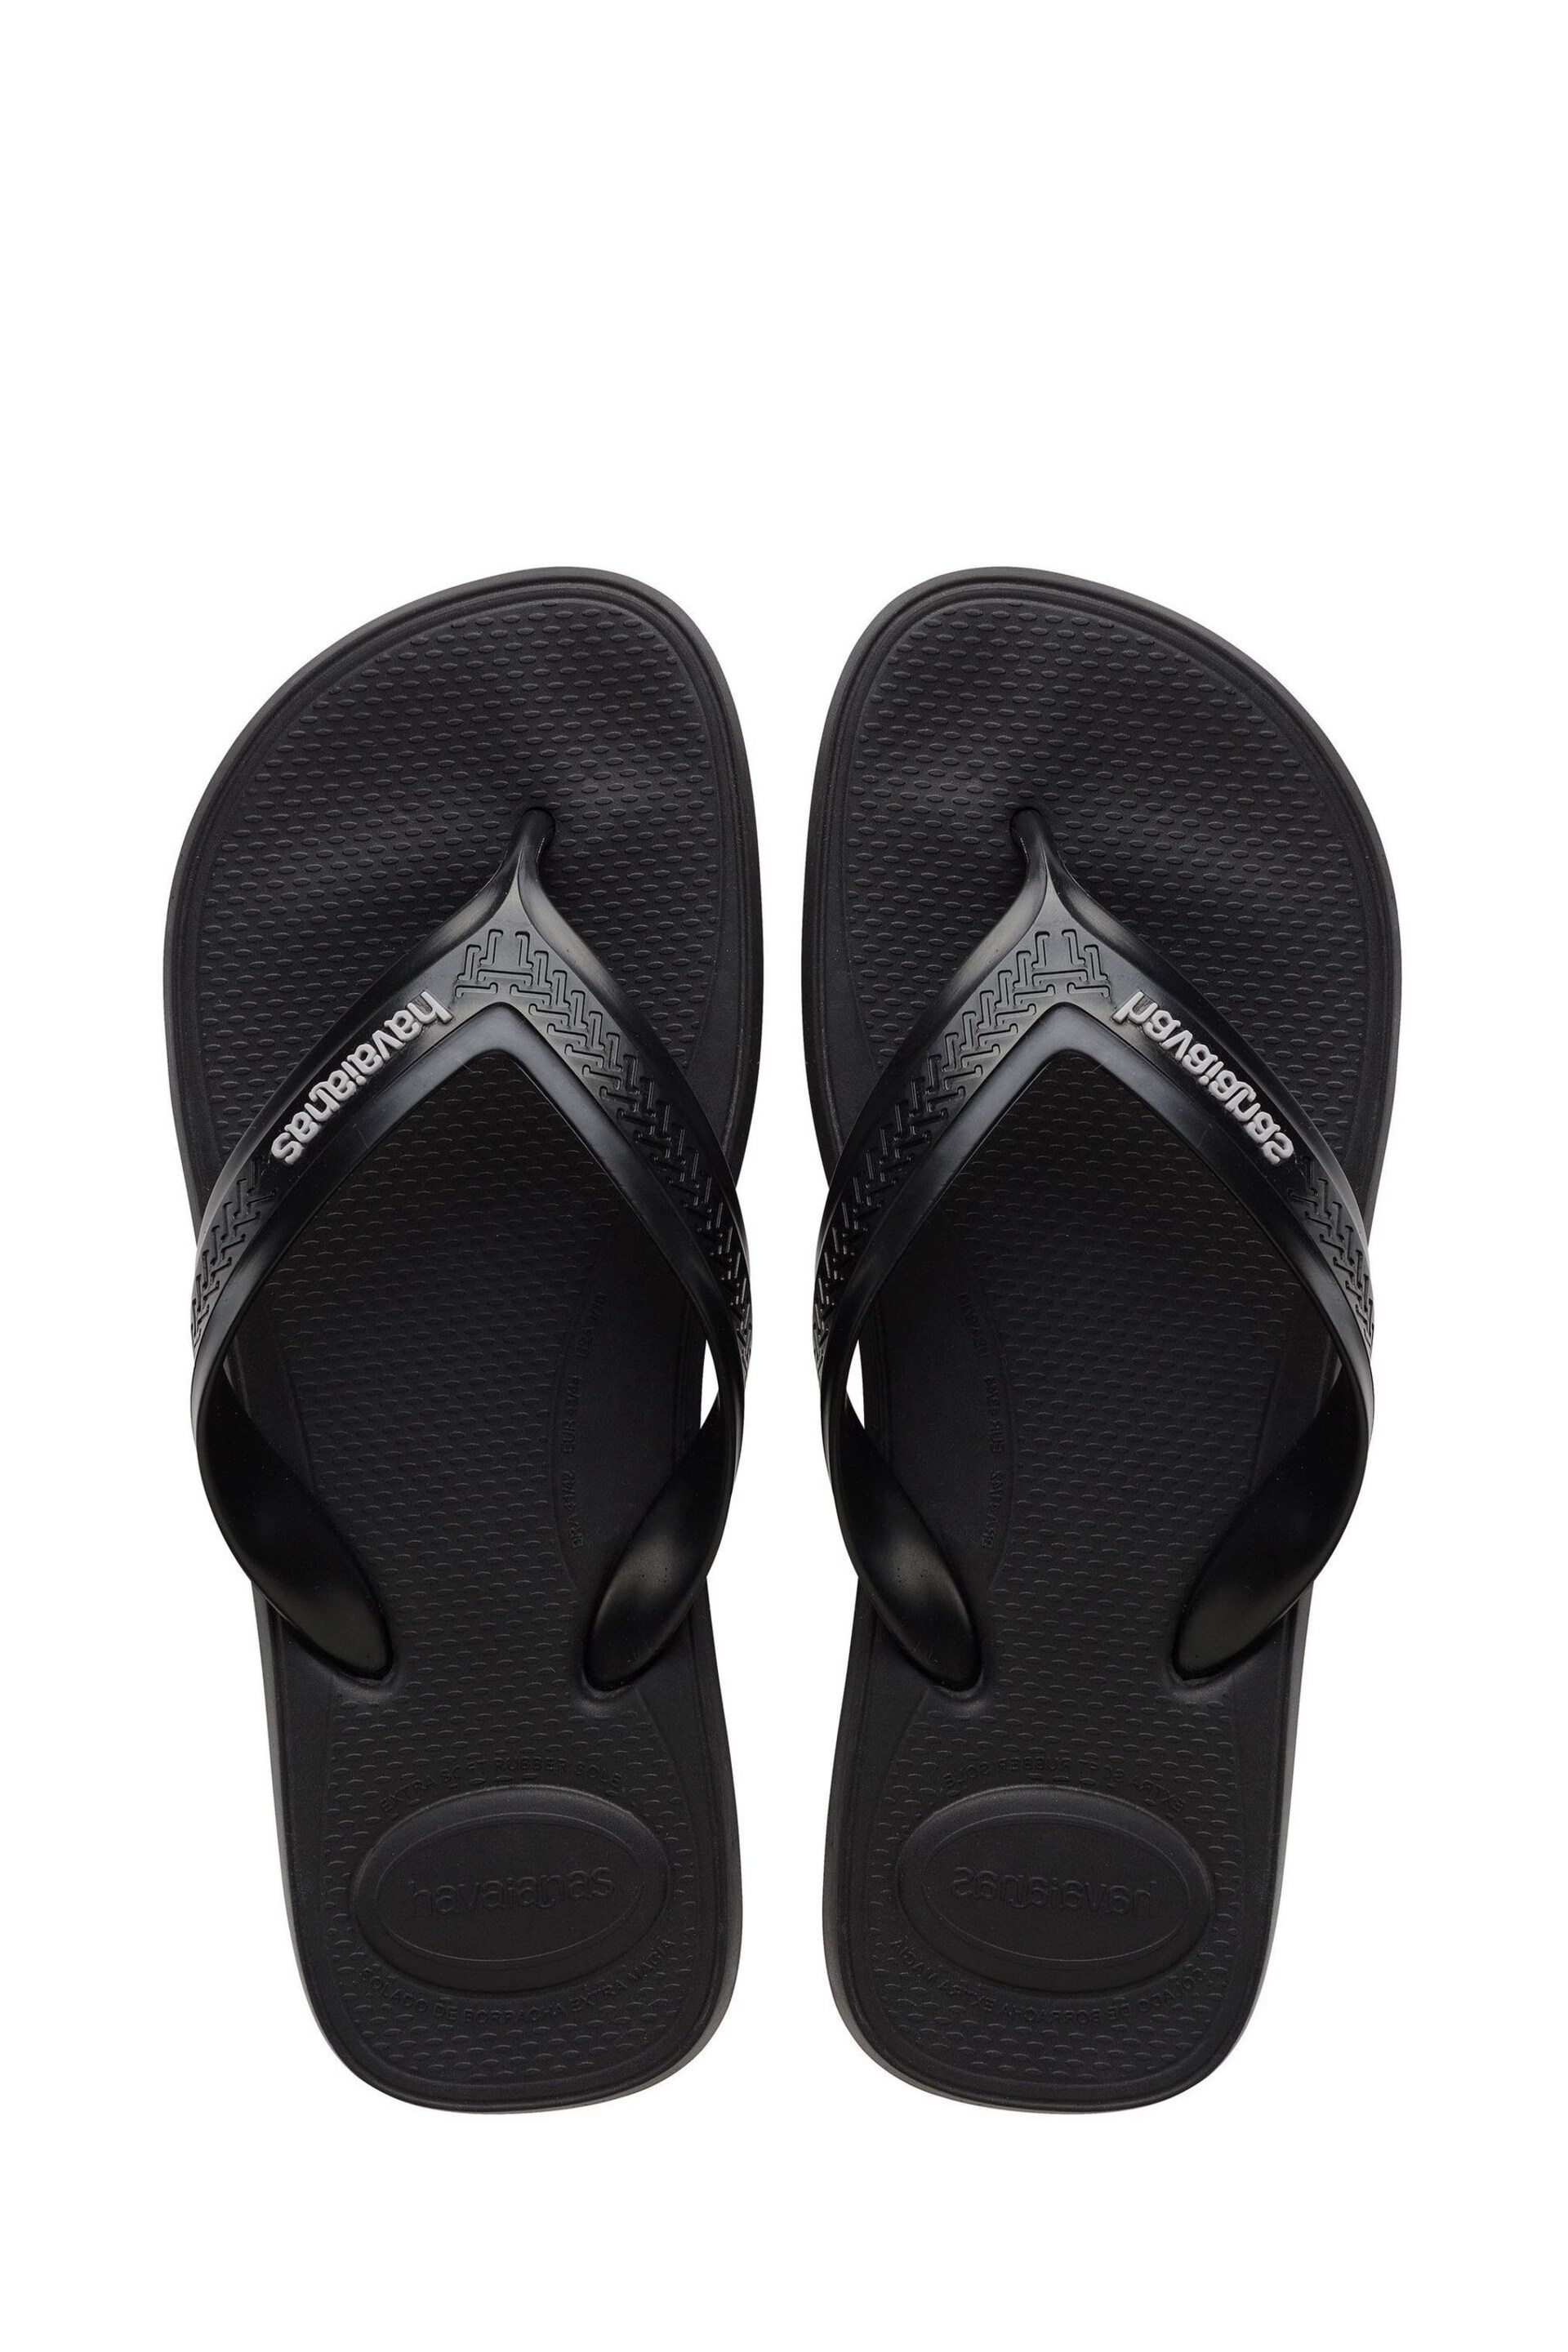 Havaianas Top Max Comfort Sandals - Image 2 of 8